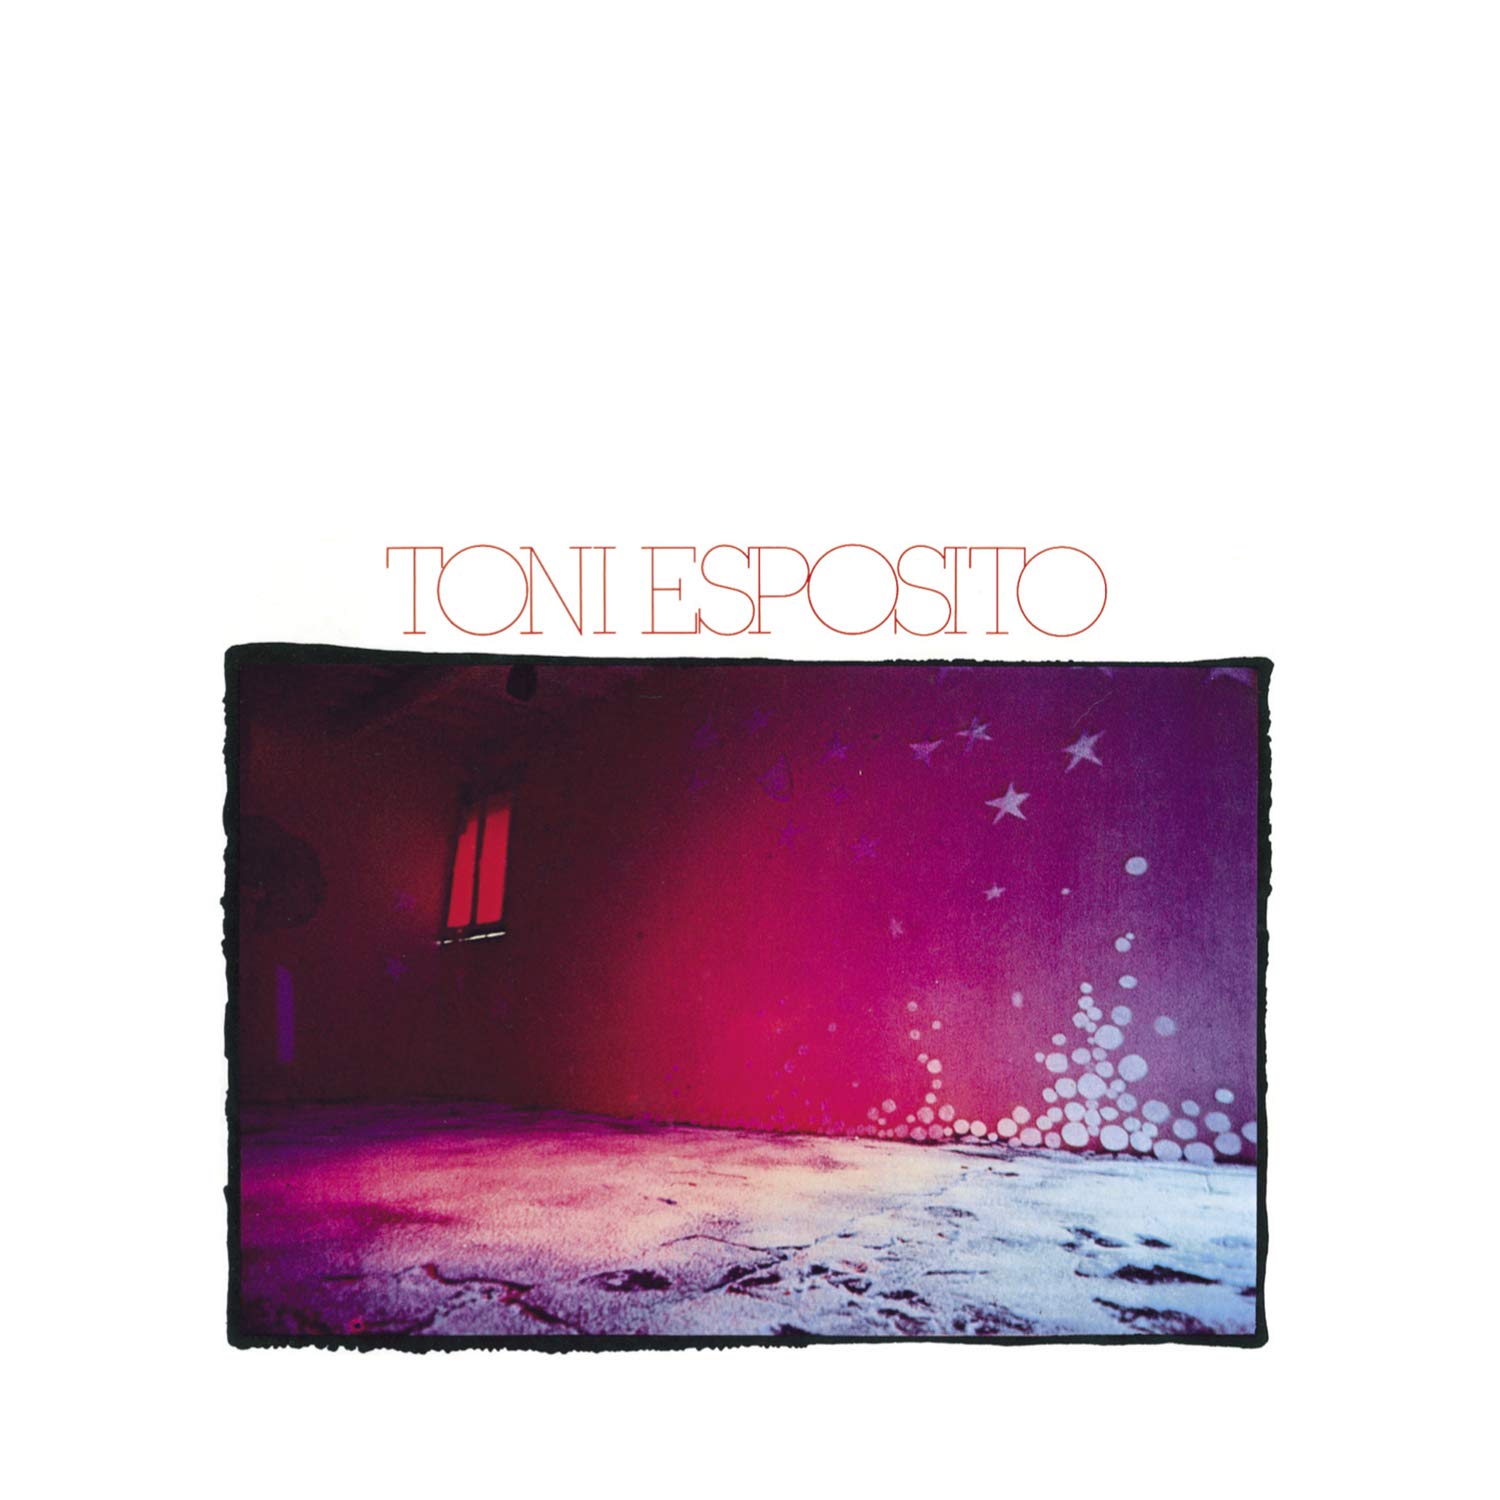 Copertina Vinile 33 giri Rosso Napoletano di Tony Esposito